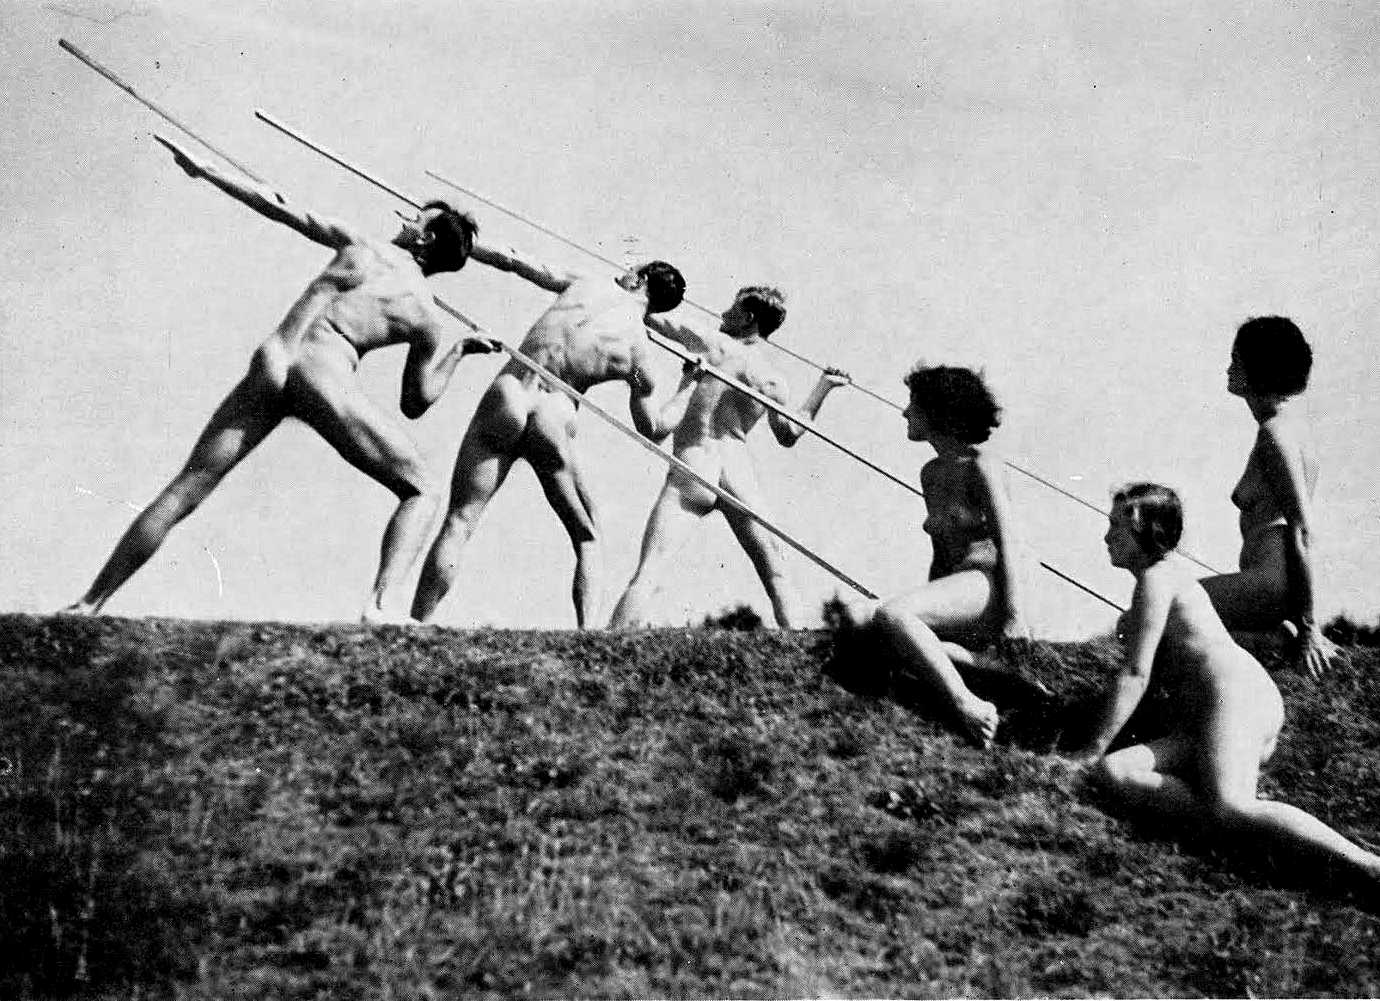 65e27-nude-naktkultur-fkk-javelinthrower-wiemarculture-deutschlandunddieostmark-thirdreich.jpg